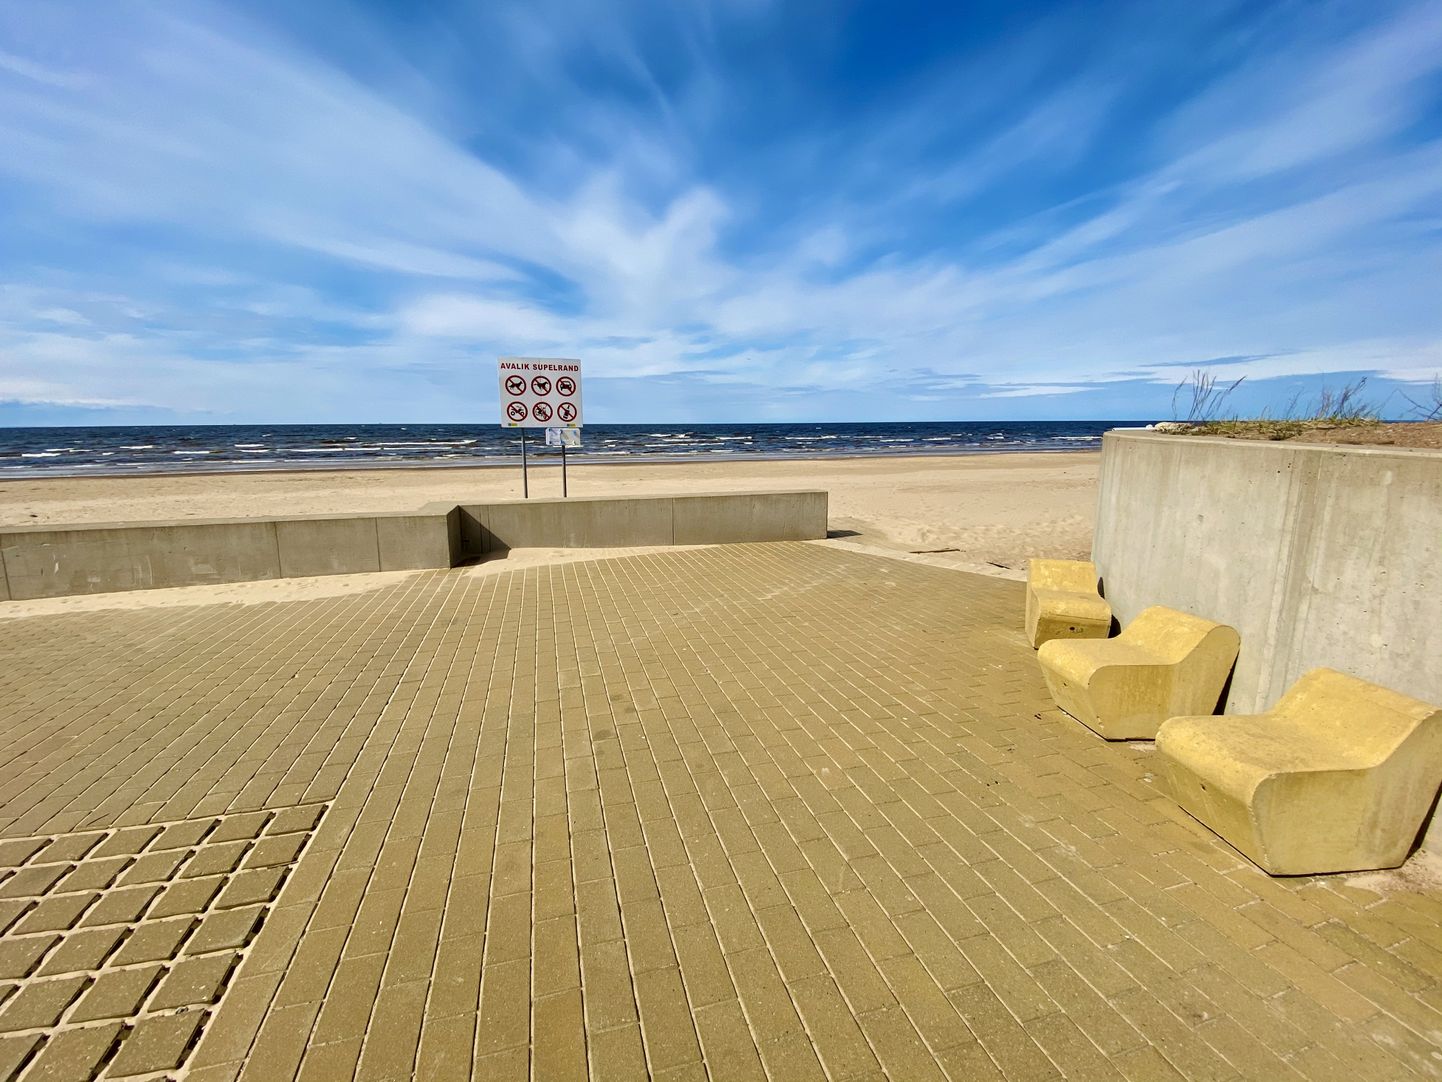 На городском пляже Нарва-Йыэсуу установят дополнительные инфознаки, напоминающие о требовании социального дистанцирования 2+2.